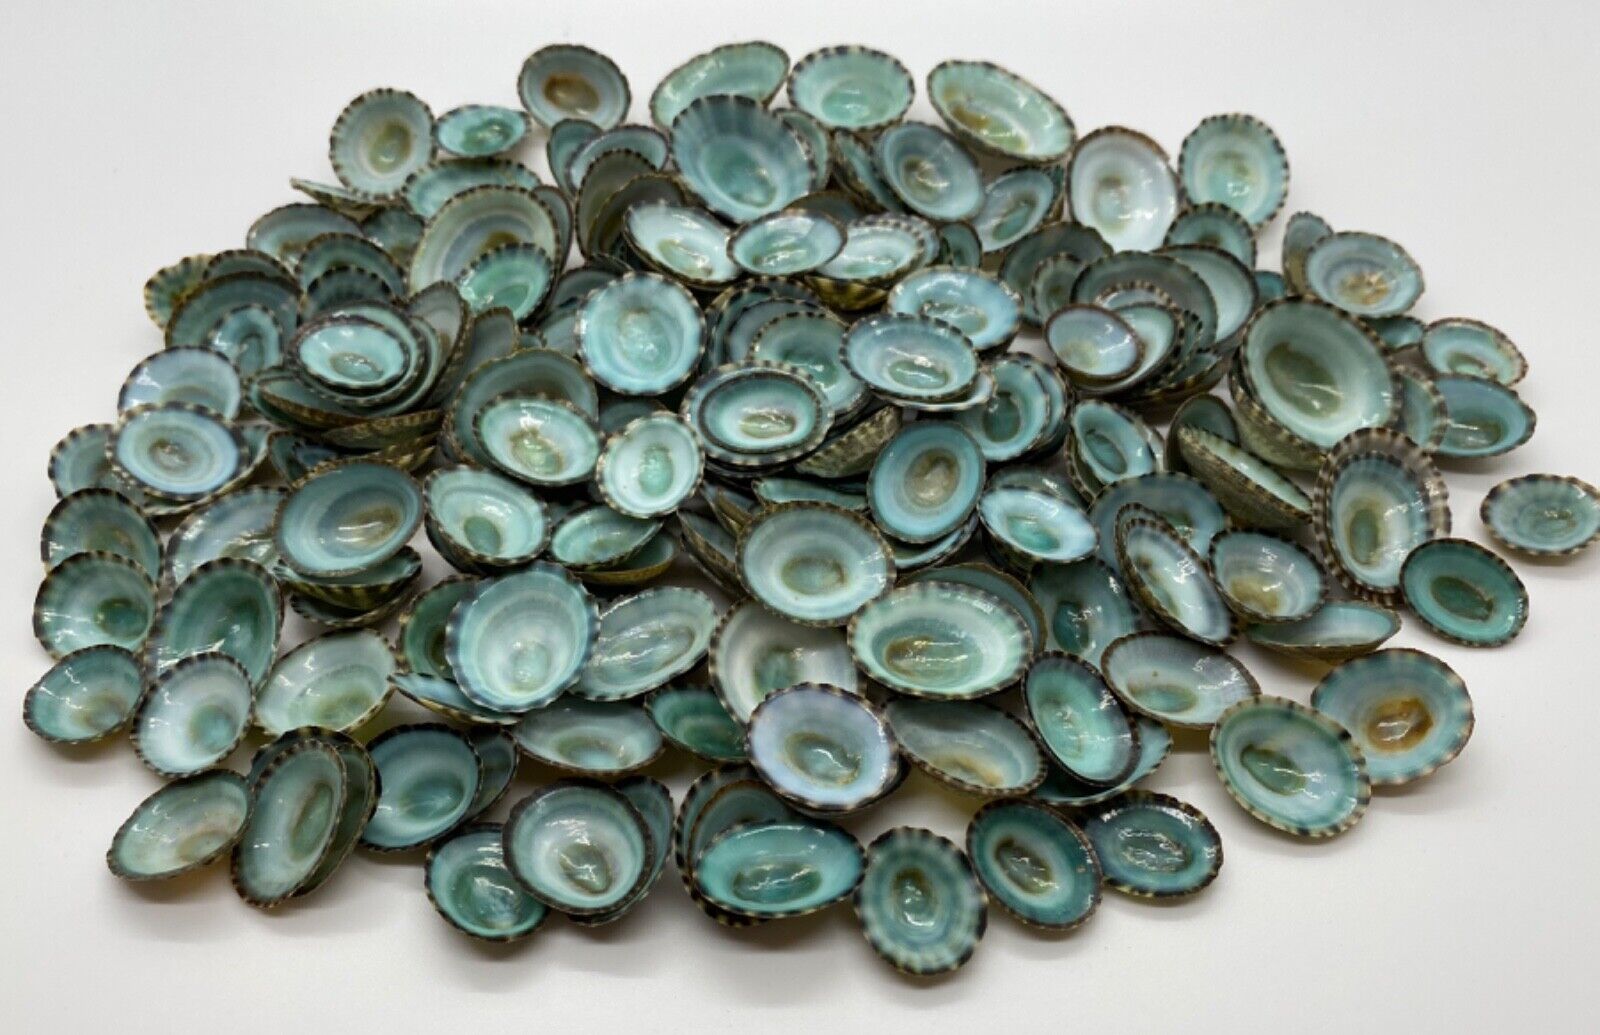 100 Aqua Limpet Shells - 0.5”-1.25” - Mexican Green Limpets (100 Shells)